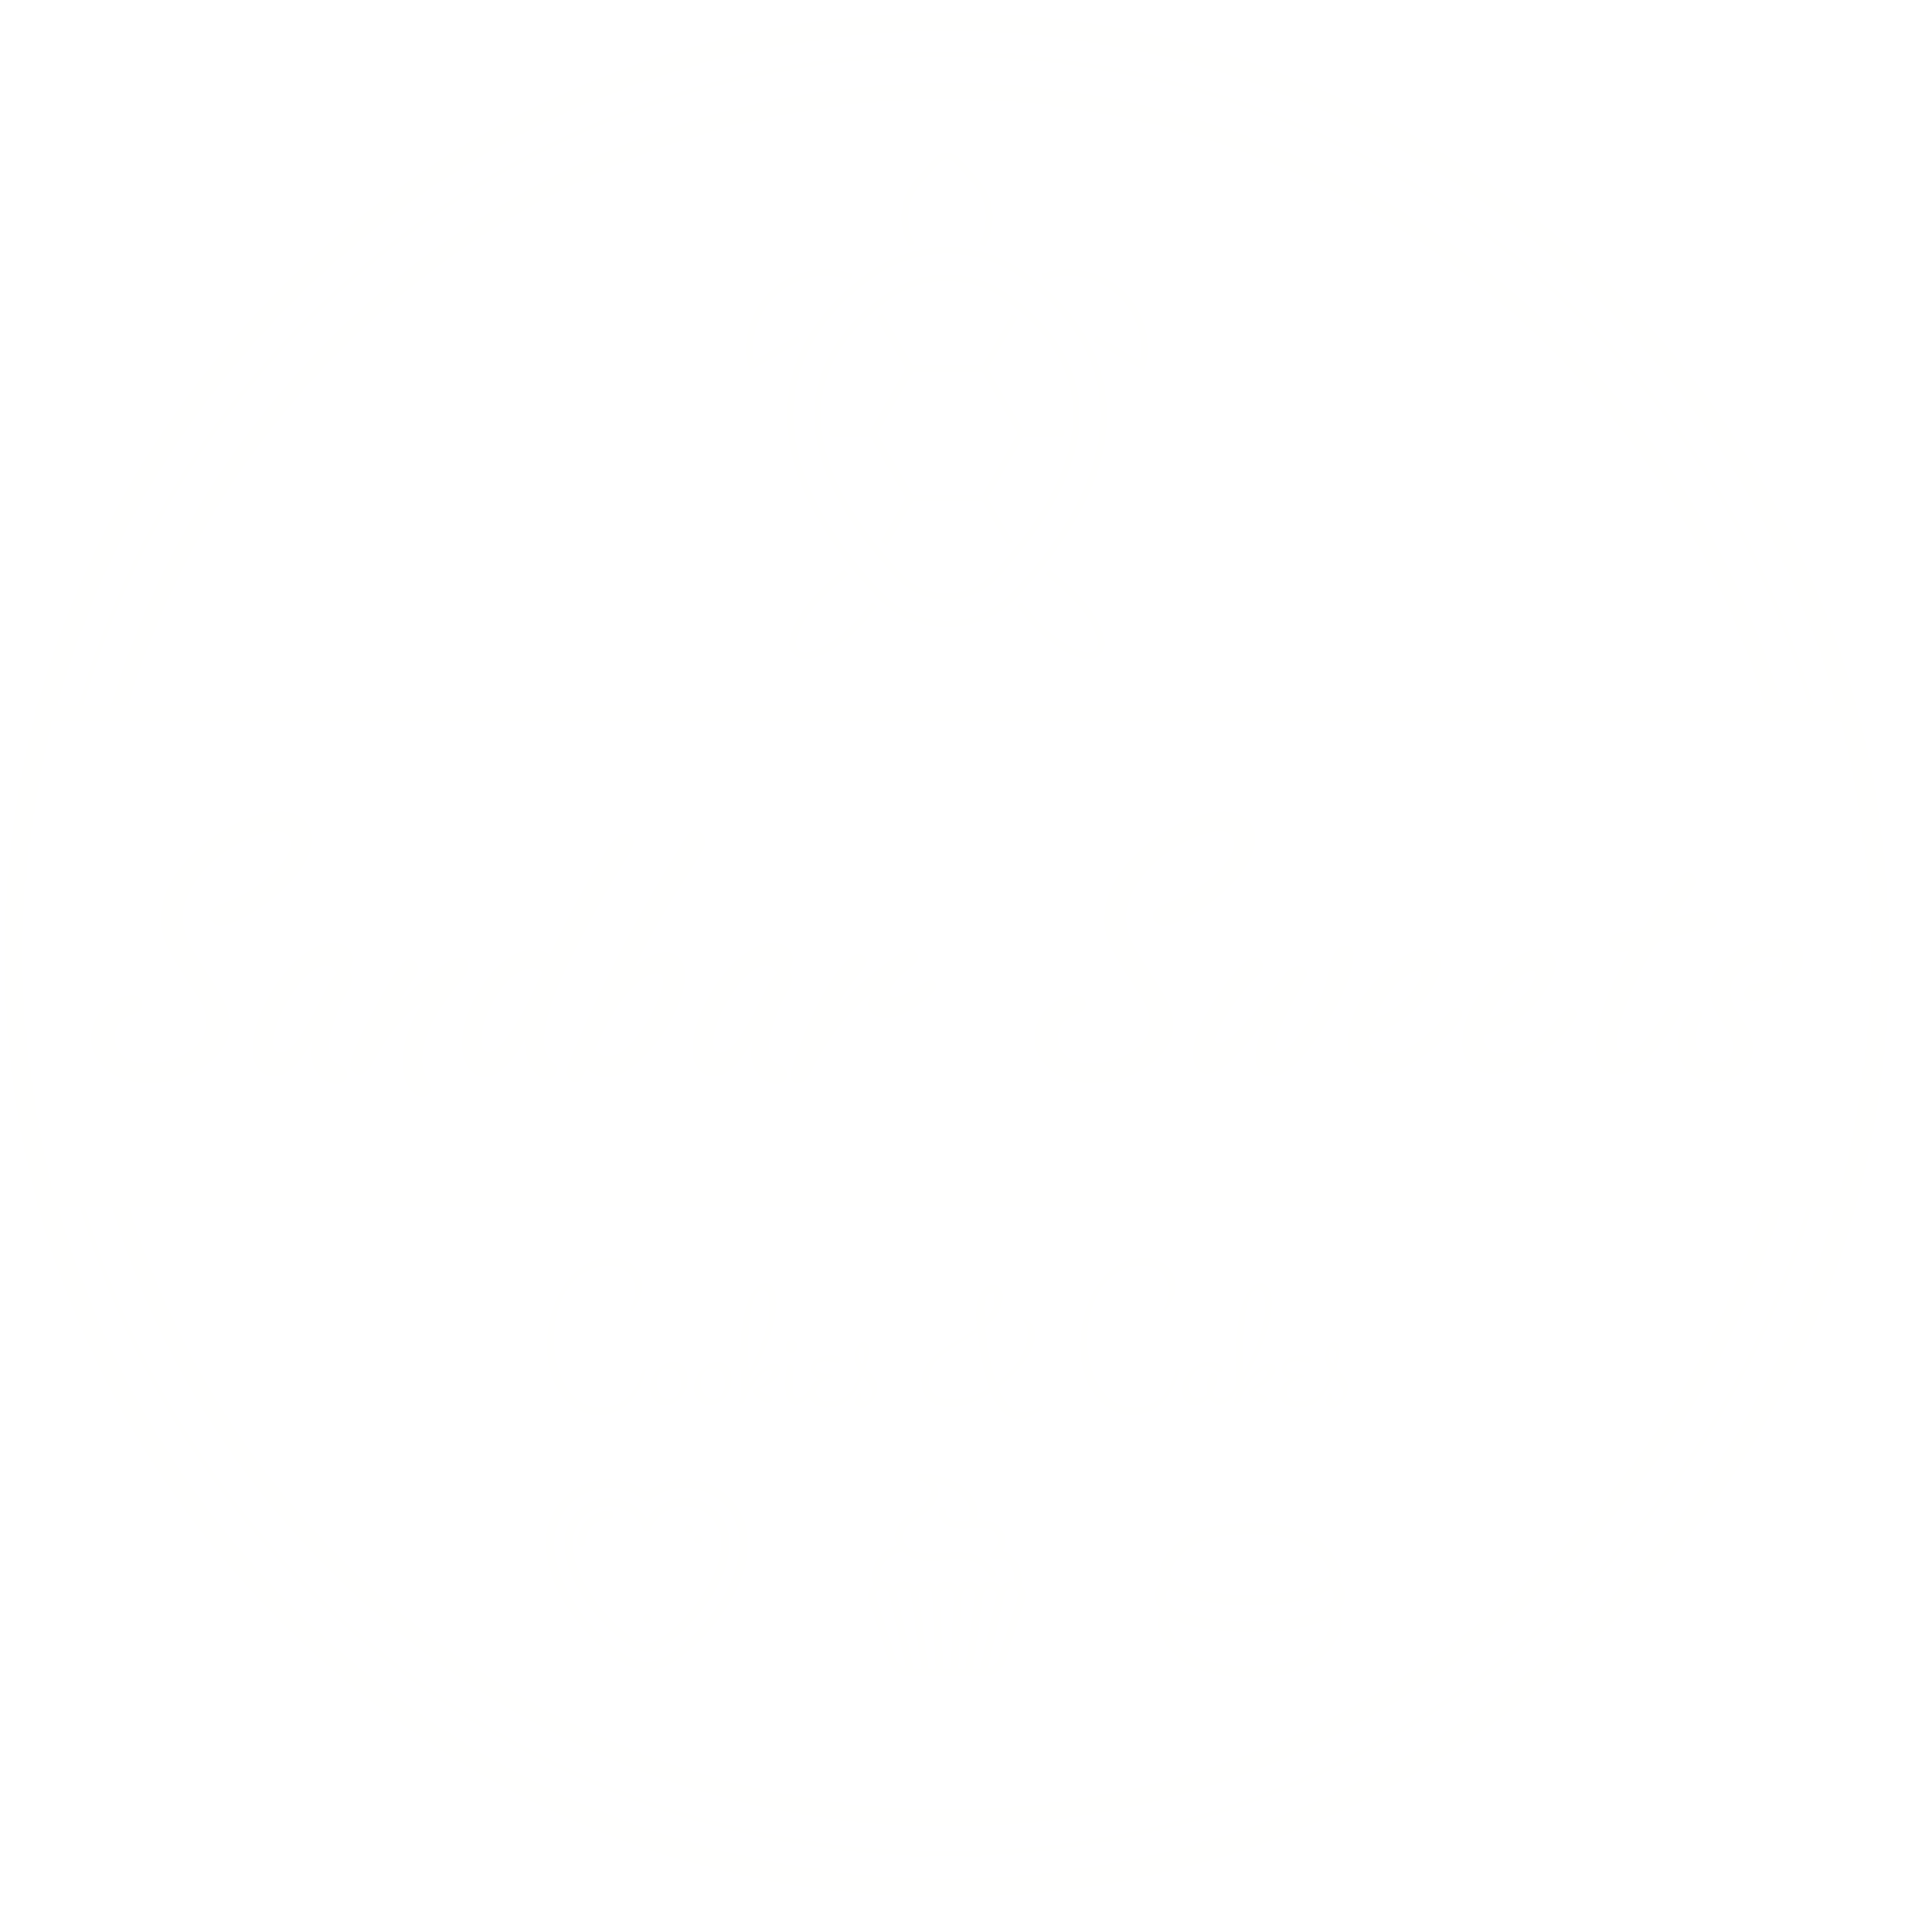 Sandbar Sweets